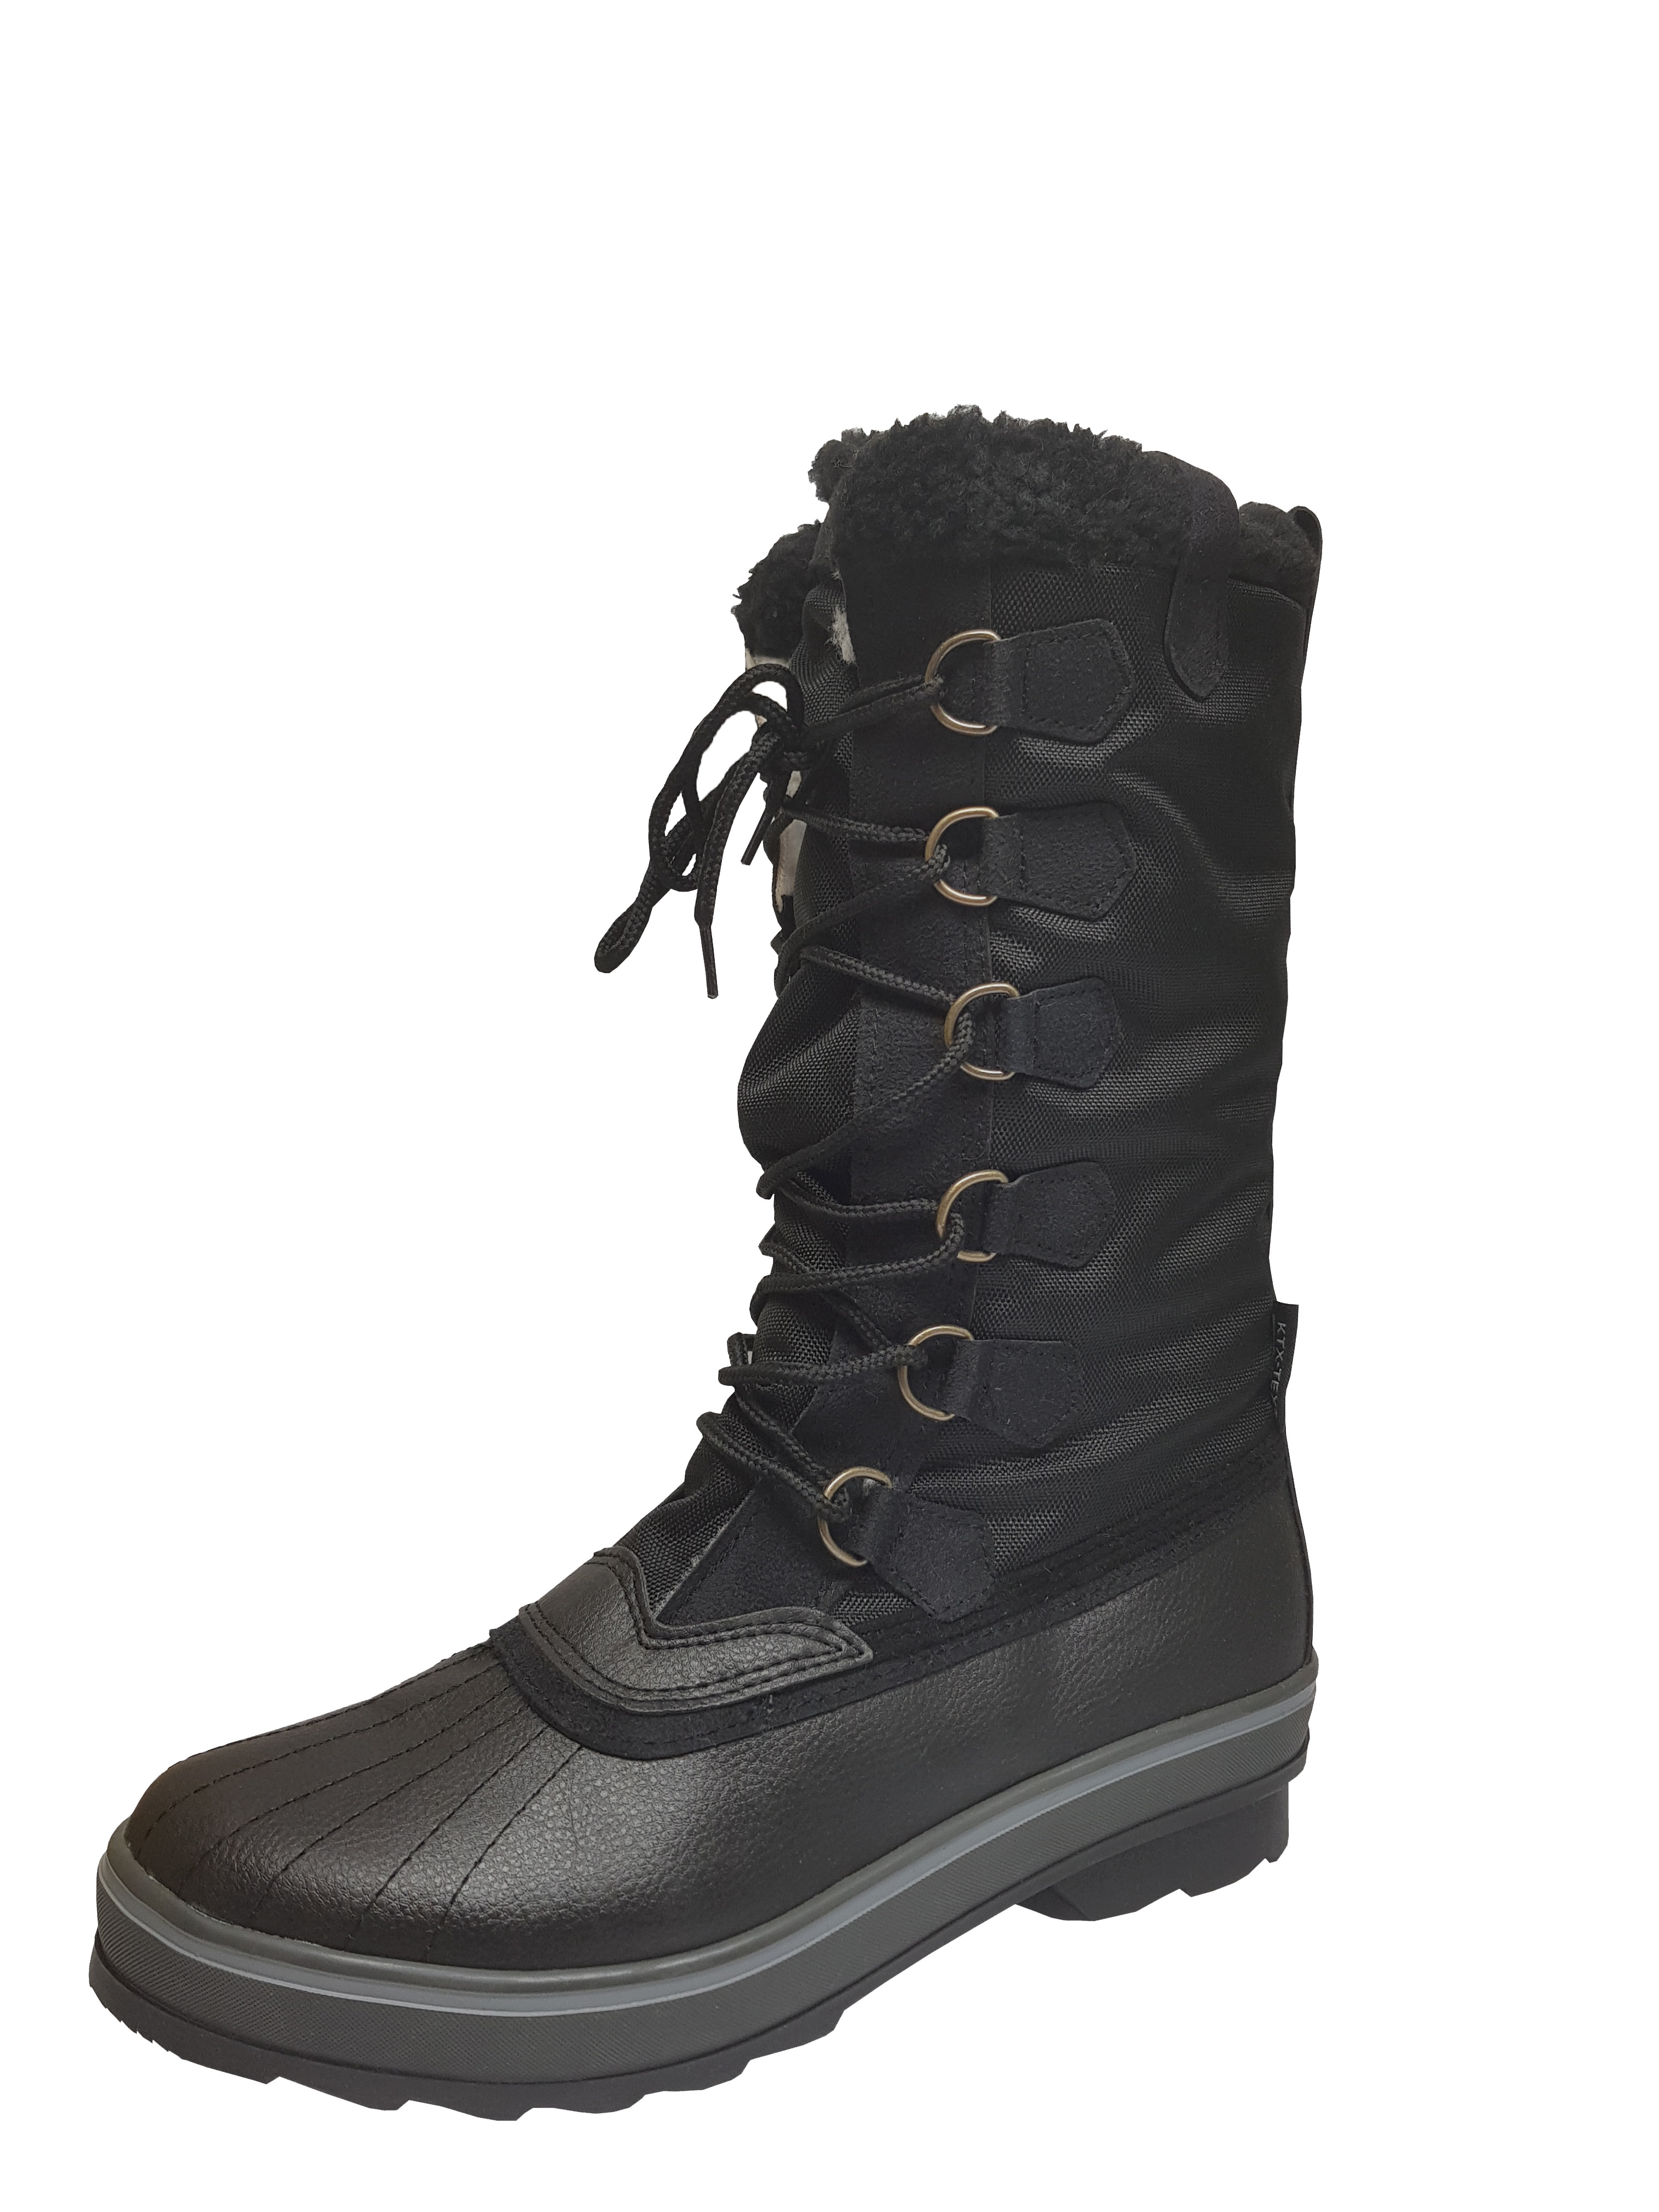 Damskie buty zimowe KTX, śniegowce, rozmiar 37, black